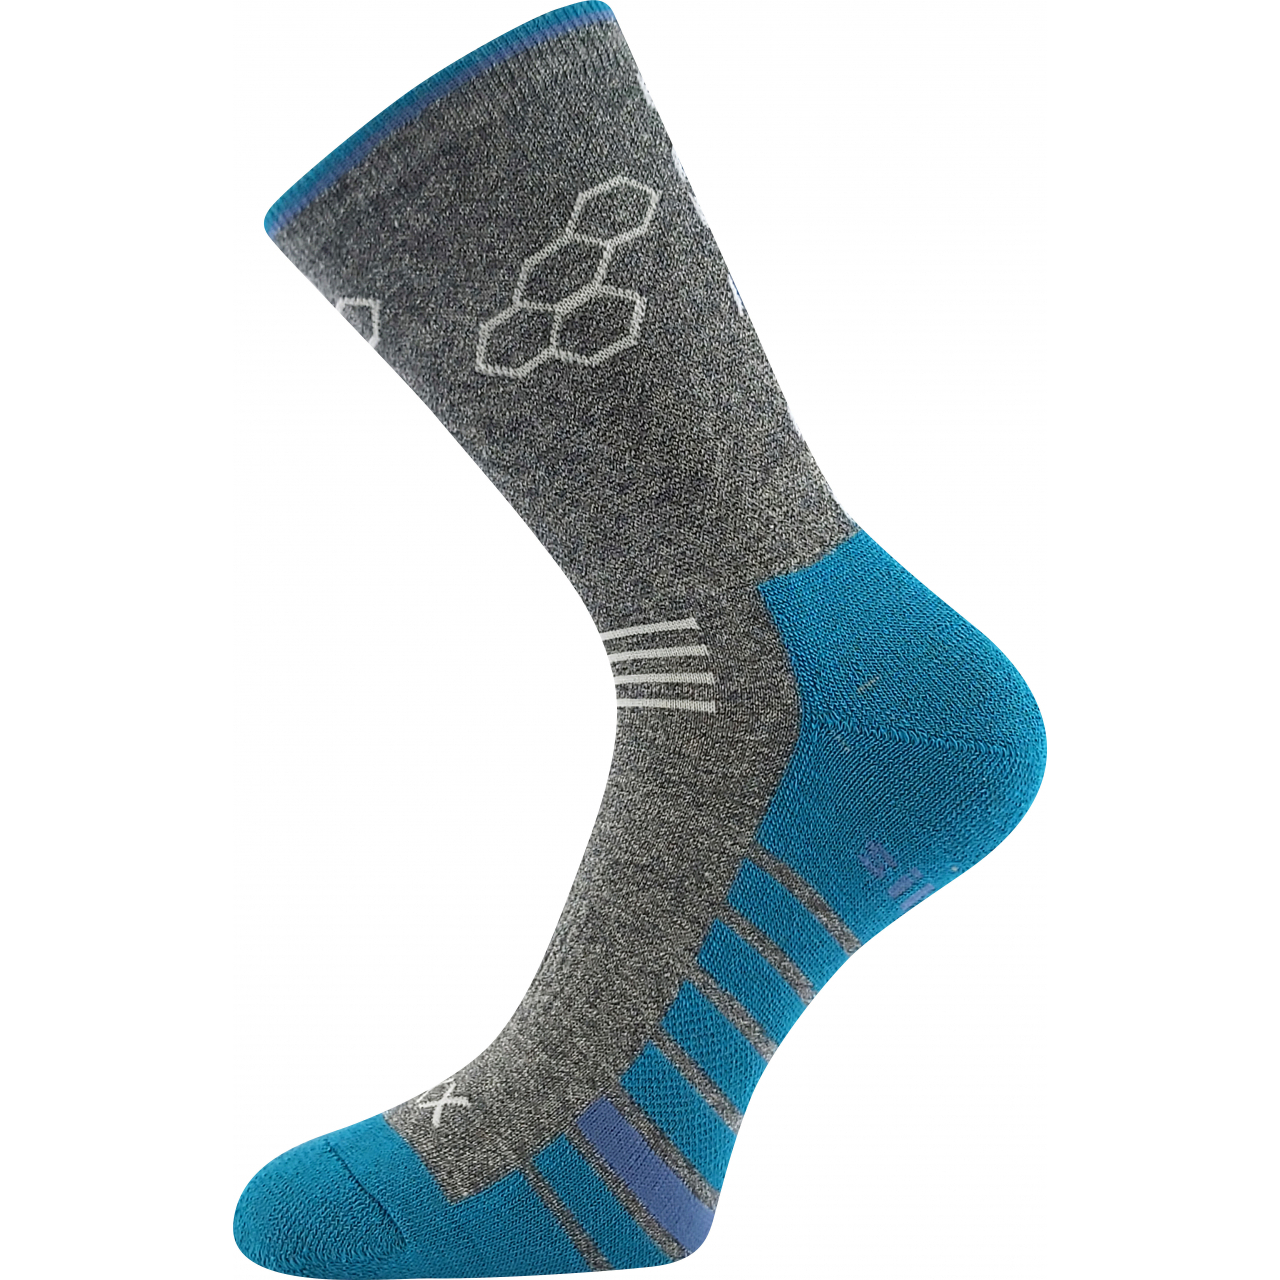 Ponožky sportovní unisex Voxx Virgo - tmavě šedé-modré, 43-46